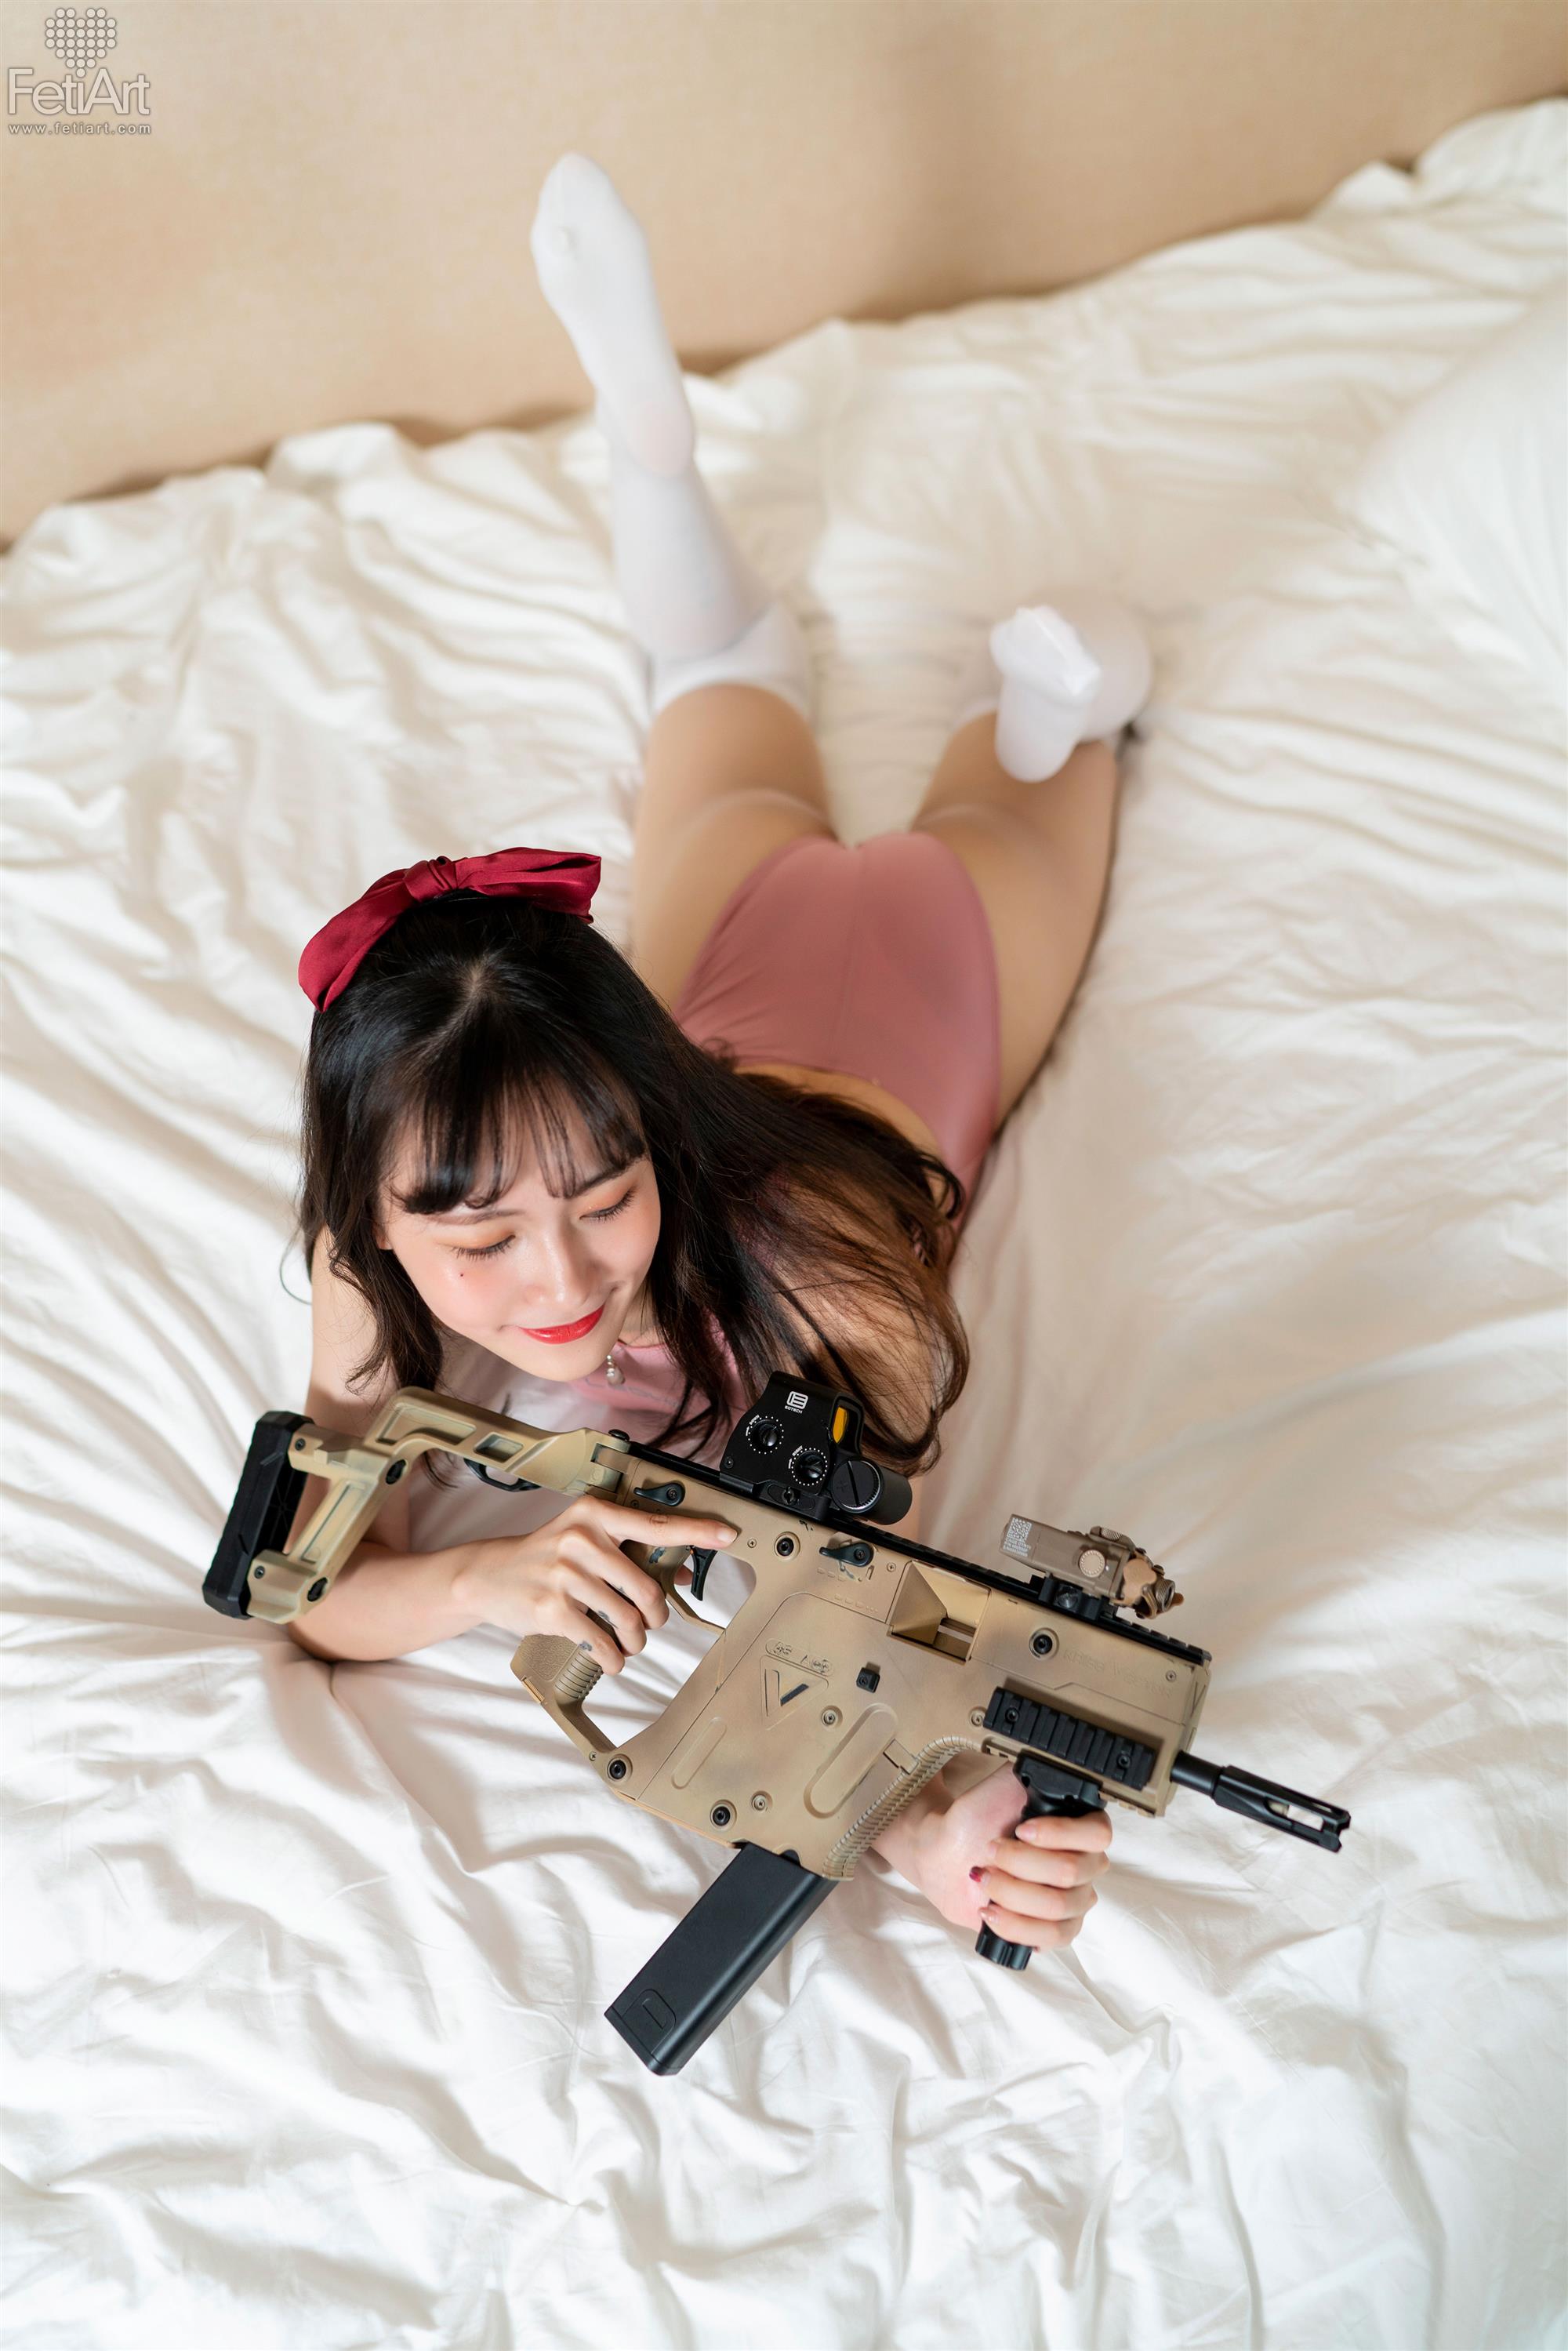 FetiArt 尚物集 No.019 Gunslinger Girl MODEL Mmi - 19.jpg